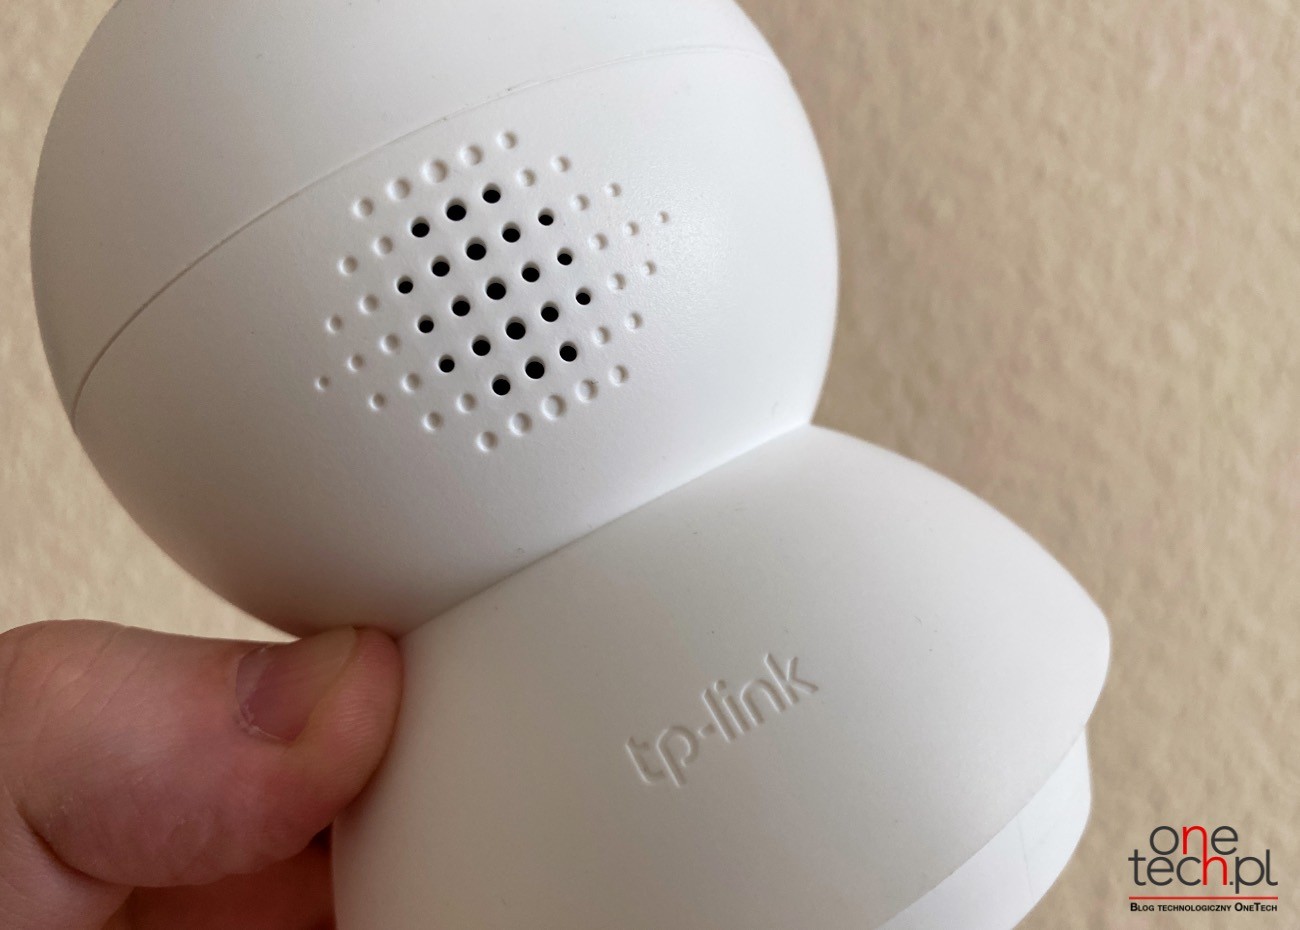 TP-Link Tapo C200 tania i dobra kamerka Wi-Fi do monitorowania domu recenzje, ciekawostki   Czy kiedykolwiek zastanawiałeś się jak poprawić bezpieczeństwo swojego domu? Istnieje wiele sposobów od zamków po alarmy, która niestety są bardzo drogie. Dlatego dziś mamy dla Was coś taniego i sprawdzonego. kamera 4